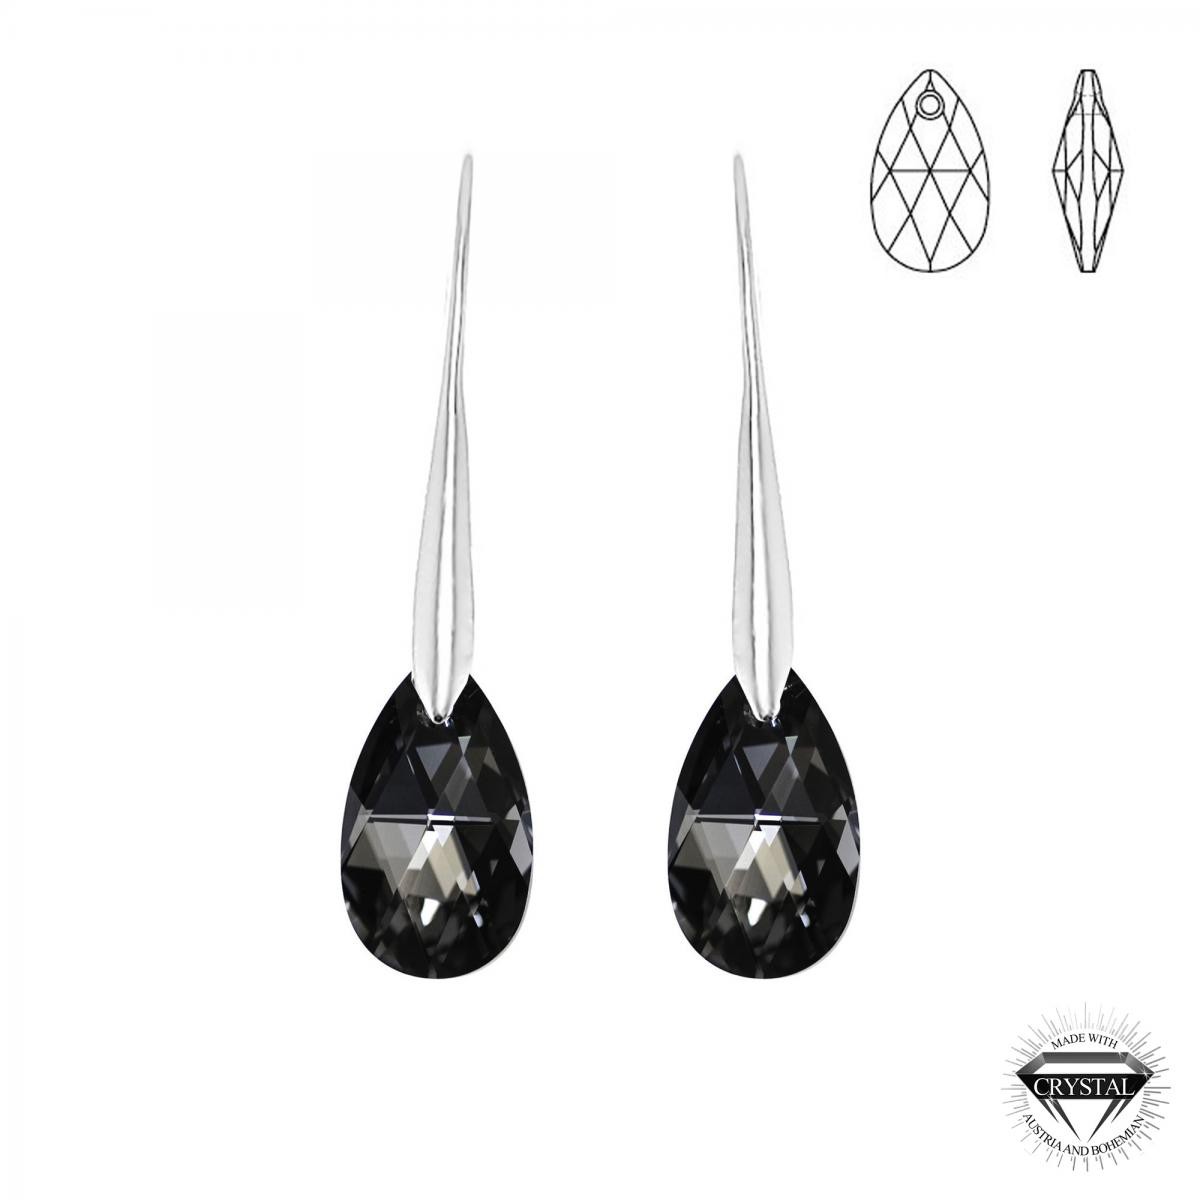 Promo : Boucles d'oreilles argentée SoCharm ornées de cristaux Swarovski